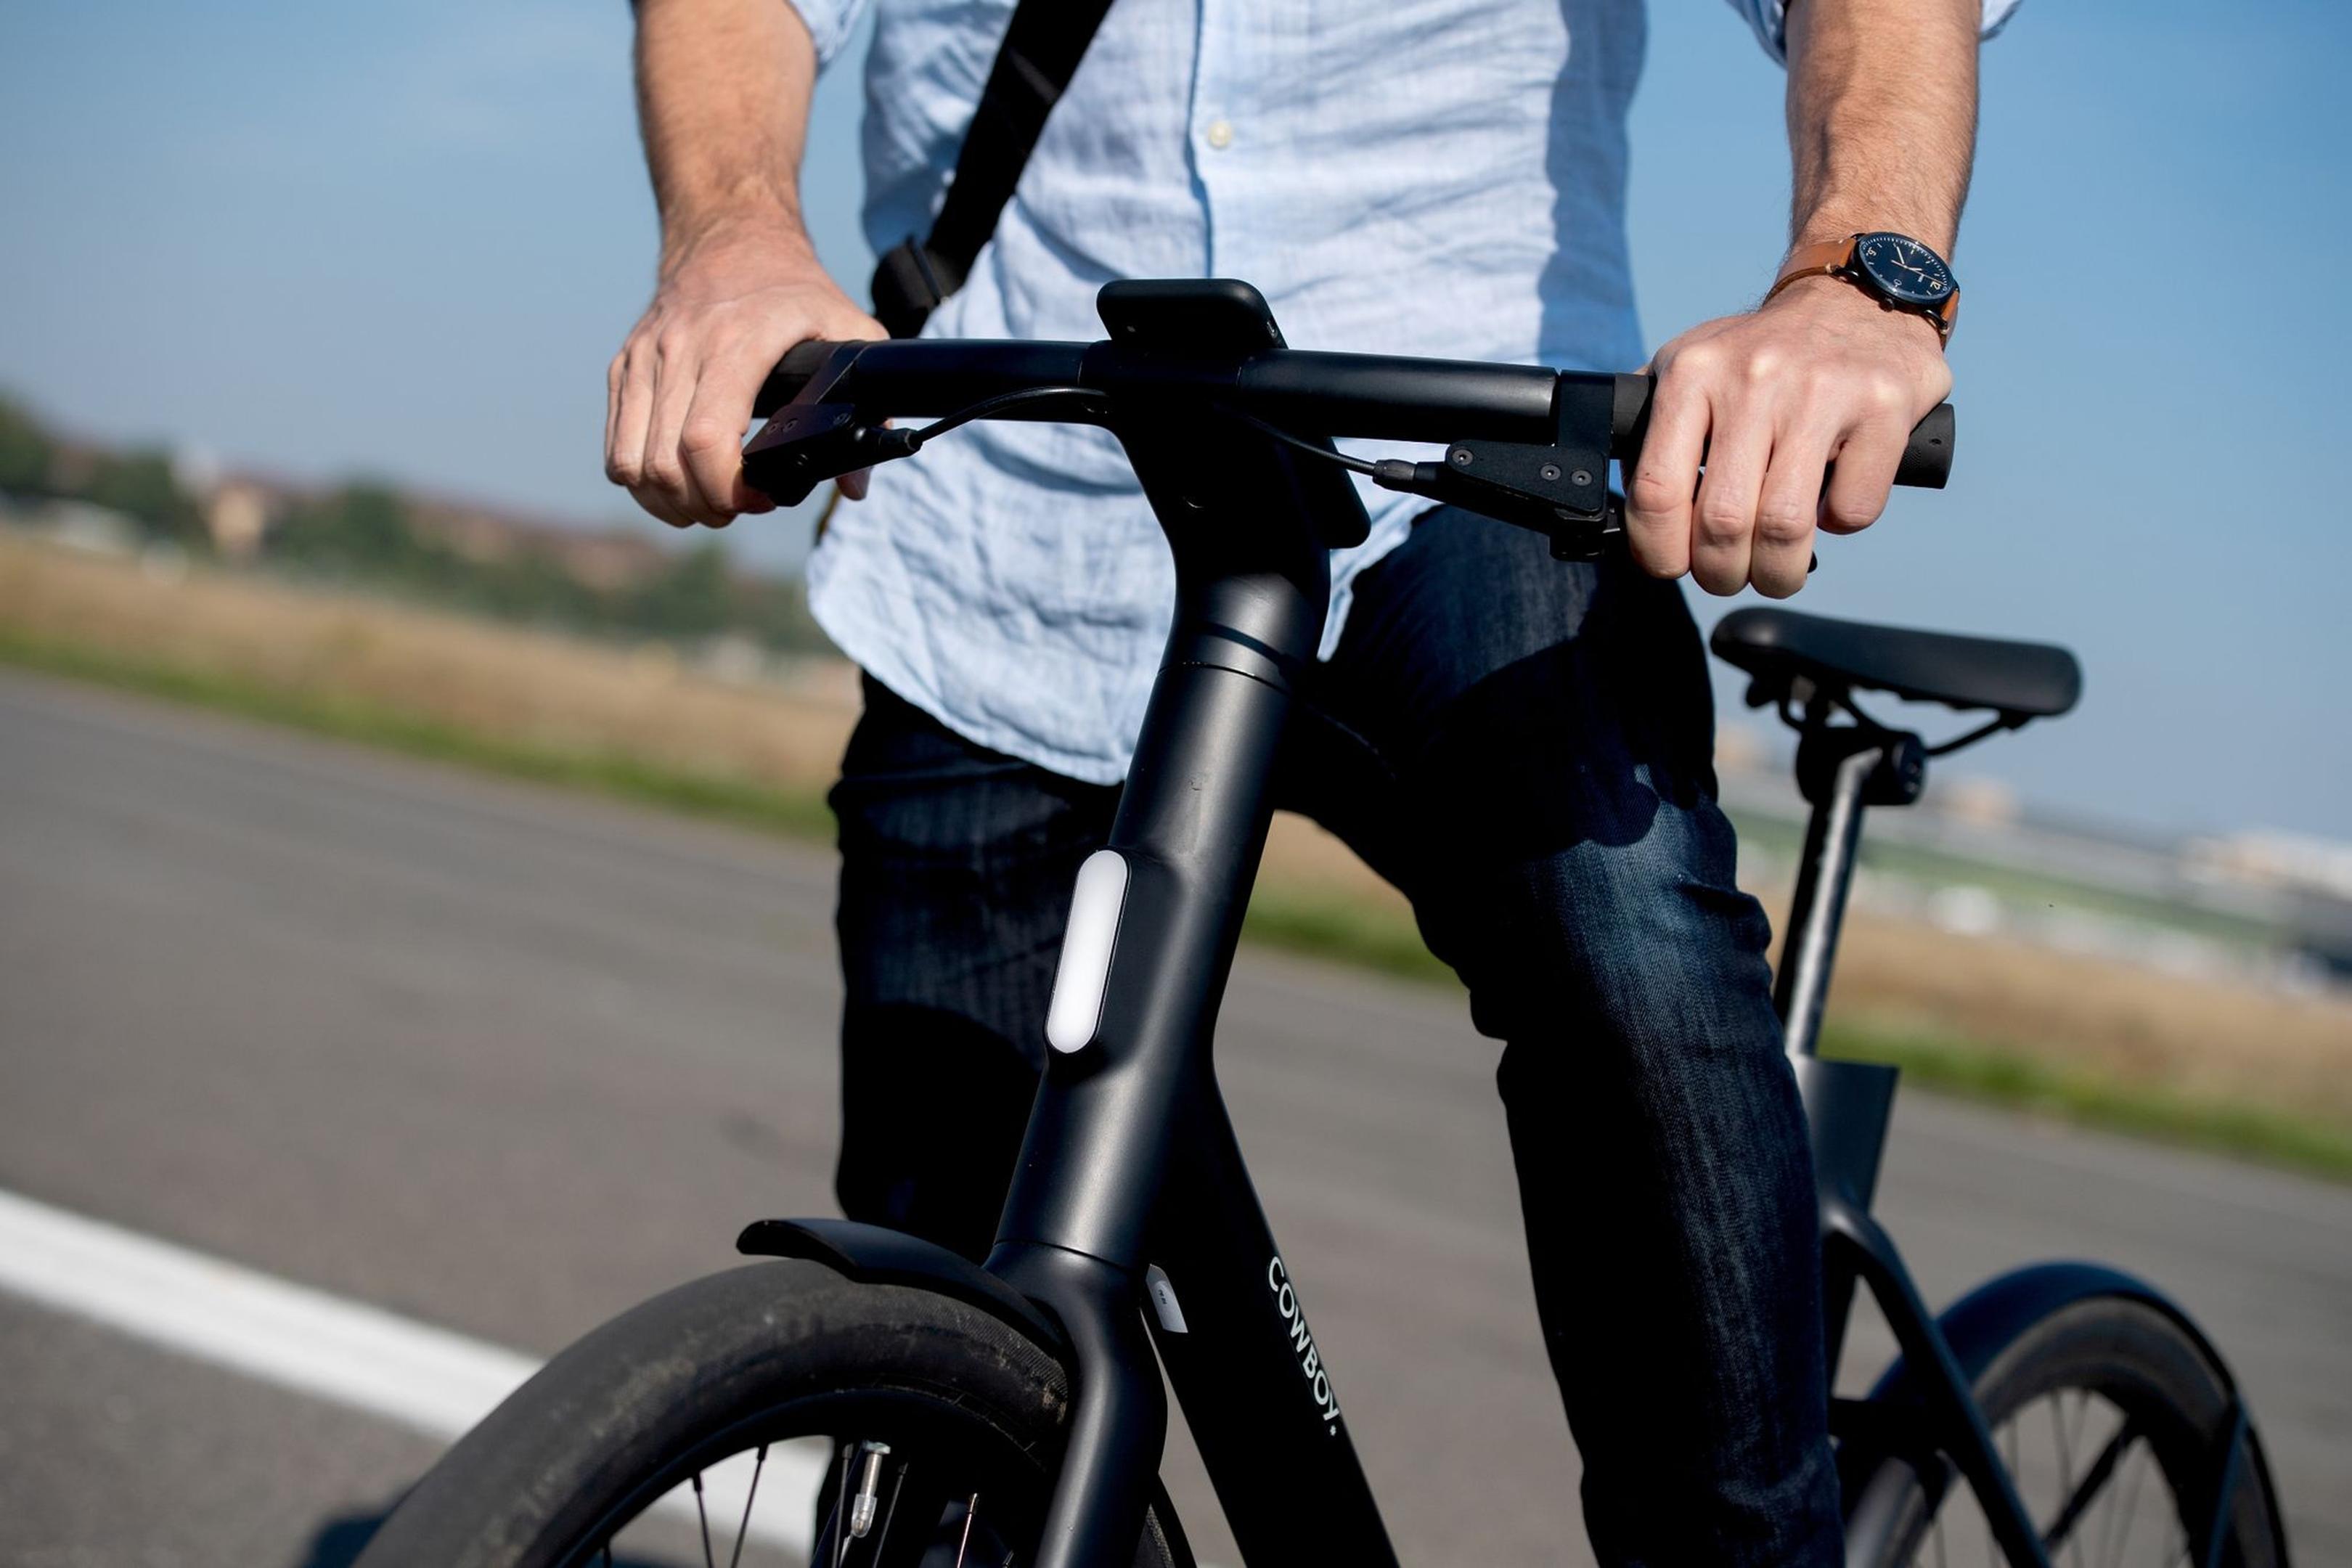 Beim Kauf eines geleasten Fahrrads am Ende der Laufzeit kann der vermeintlich günstige Preis durch zusätzliche Steuerzahlungen teurer werden.